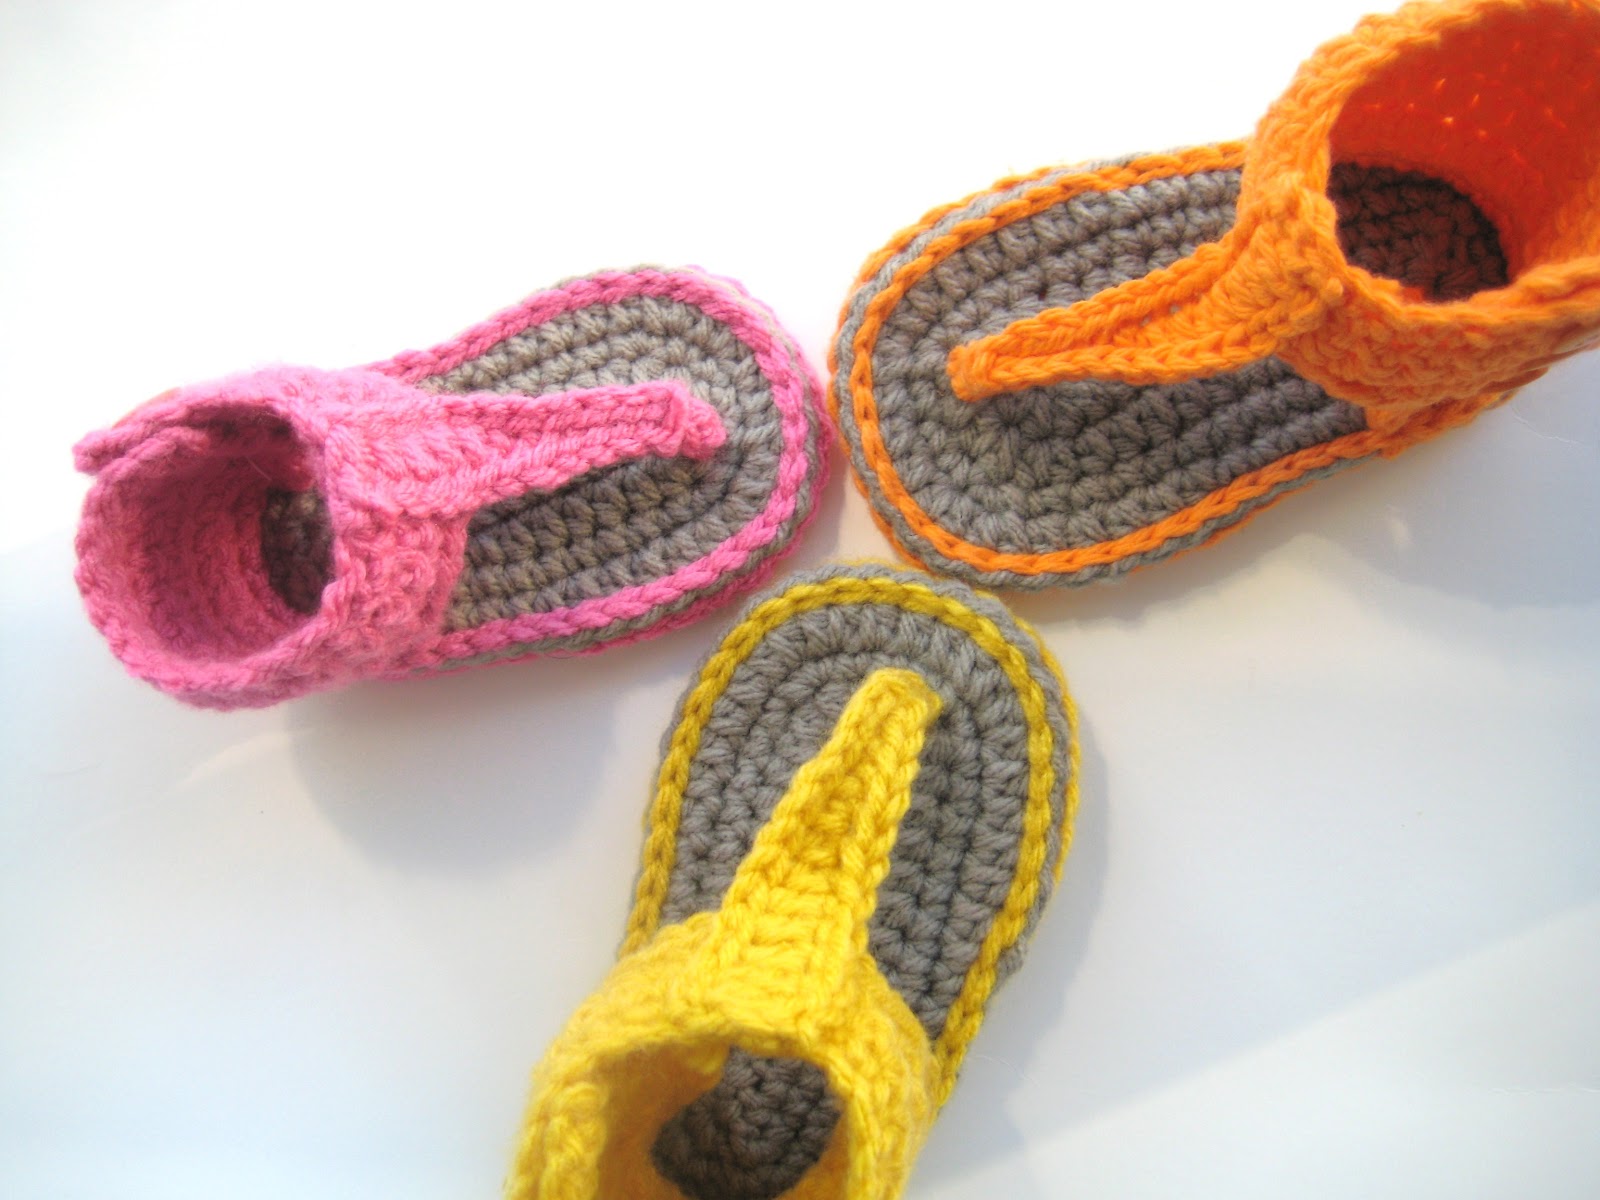 Crochet Dreamz: Gladiator Sandals, Crochet Pattern for Baby